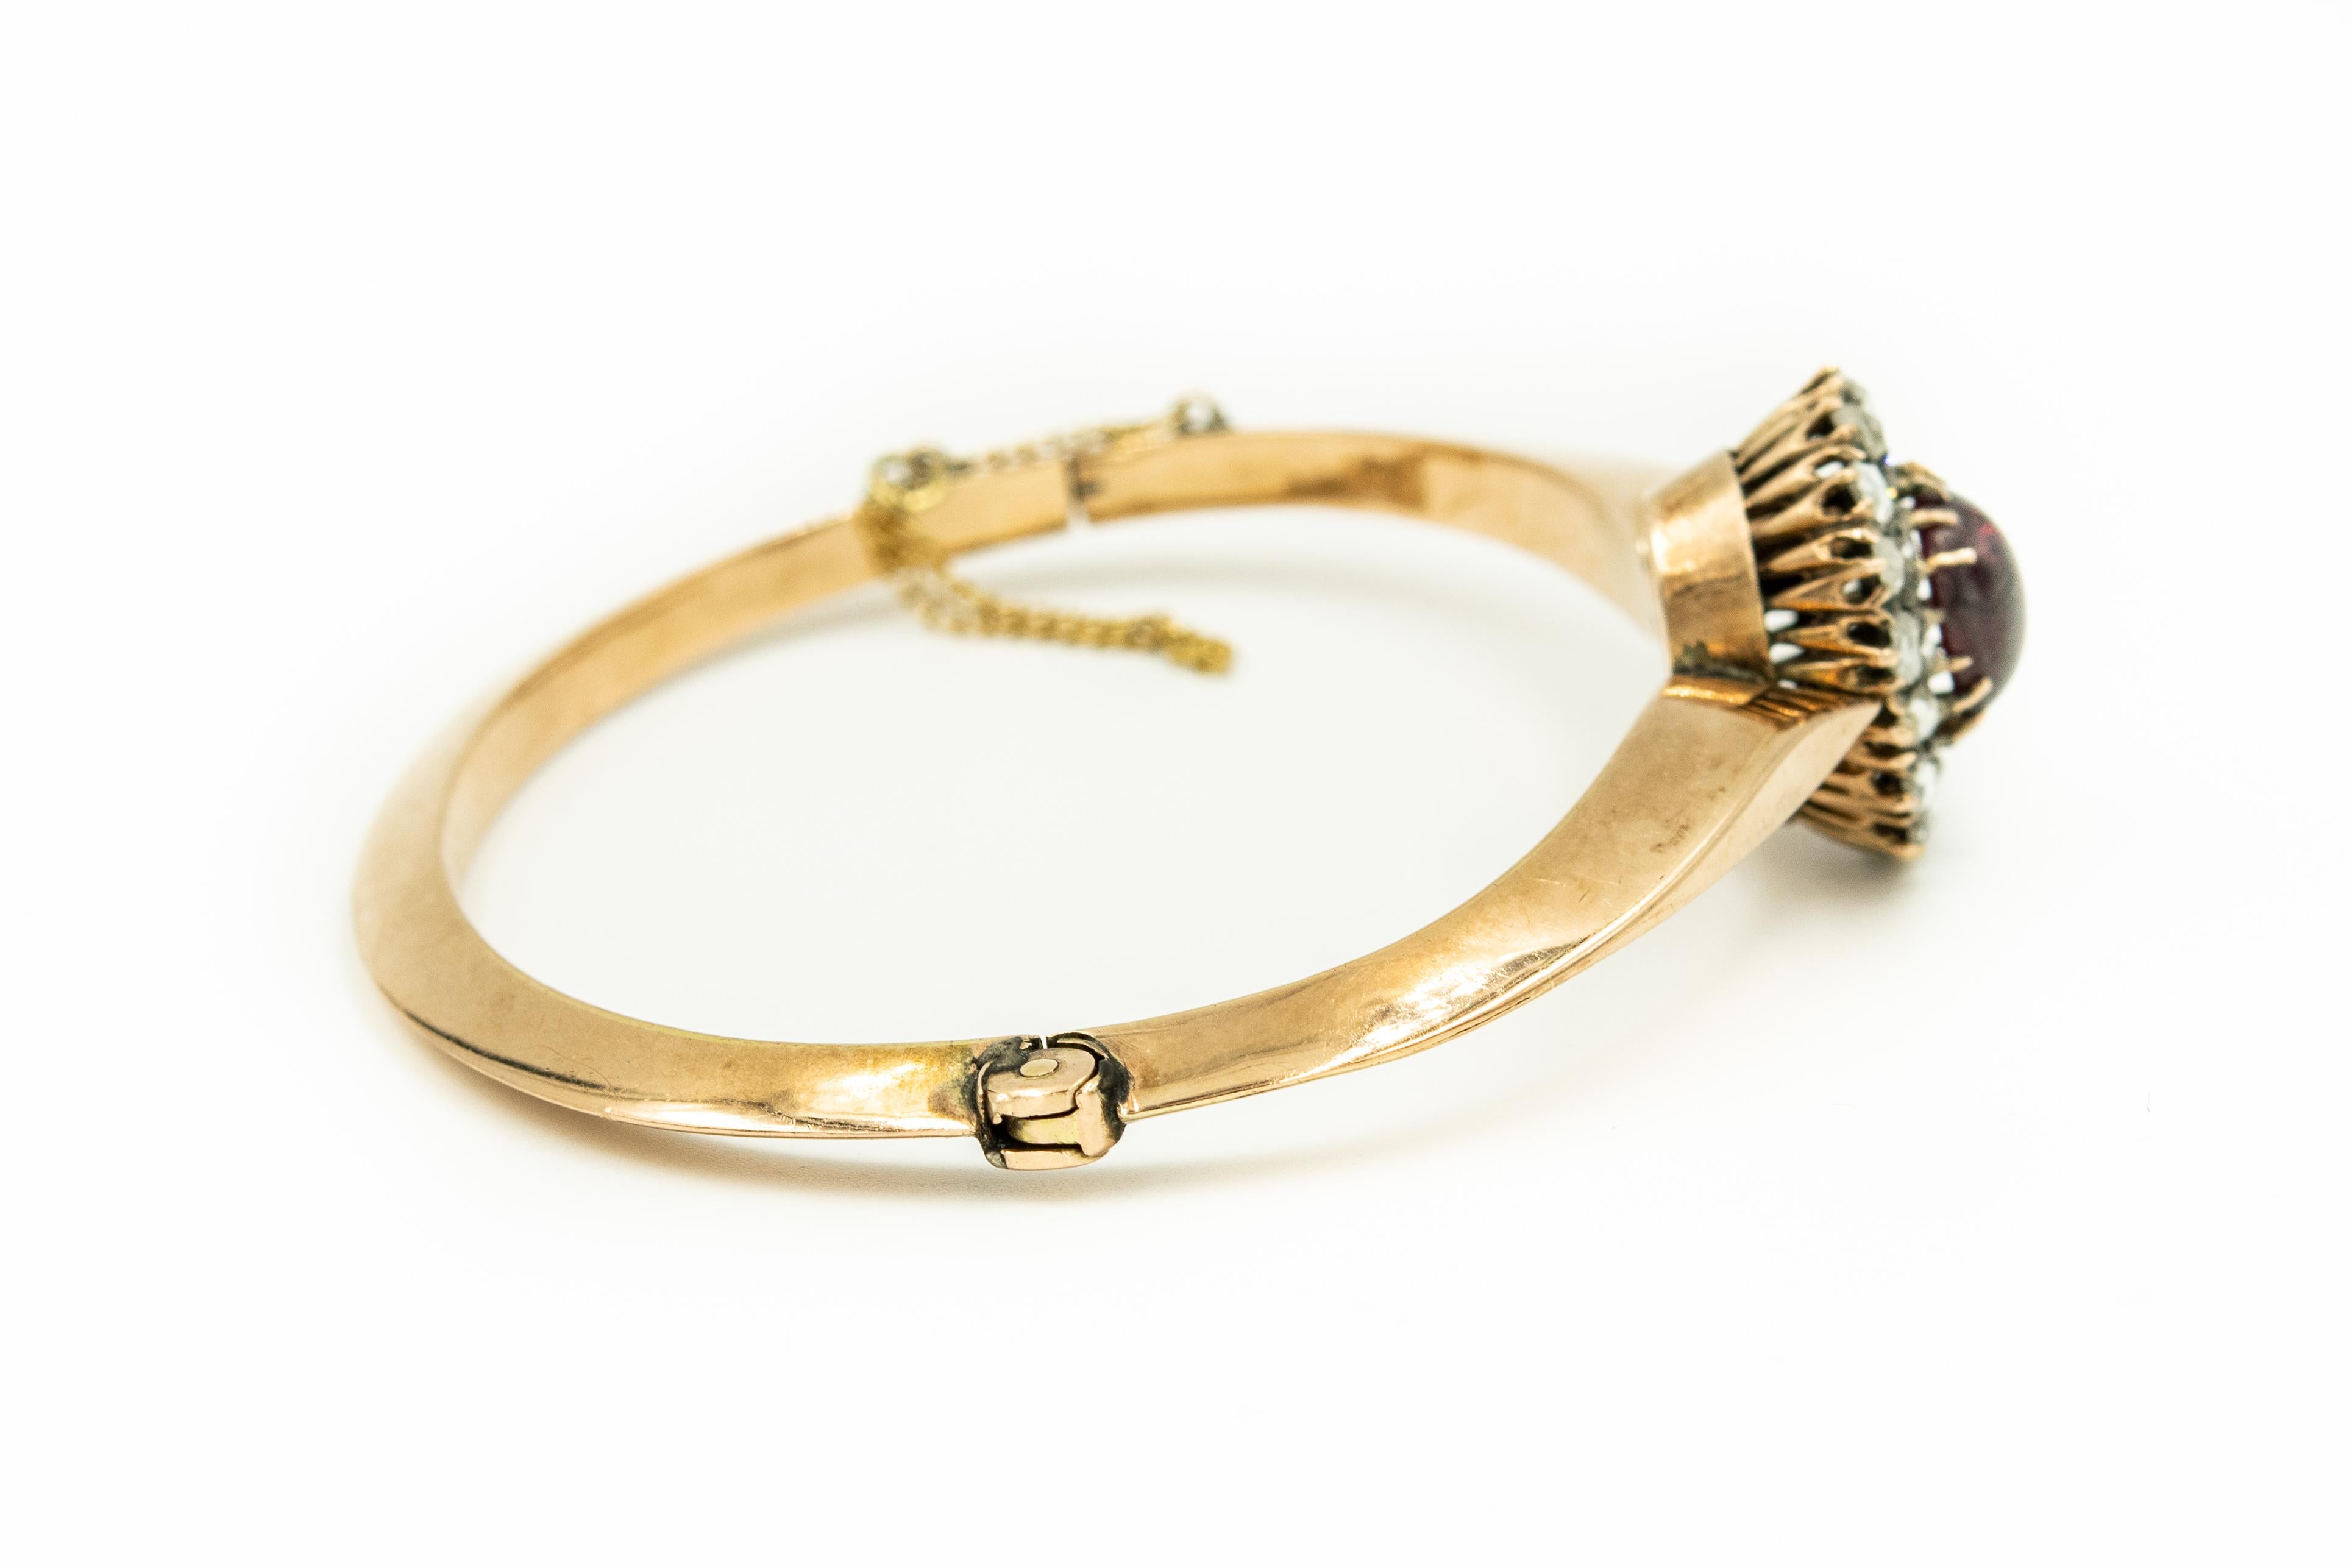 Cabochon Antique Victorian Garnet Rose Cut Diamond Gold Bangle Bracelet For Sale